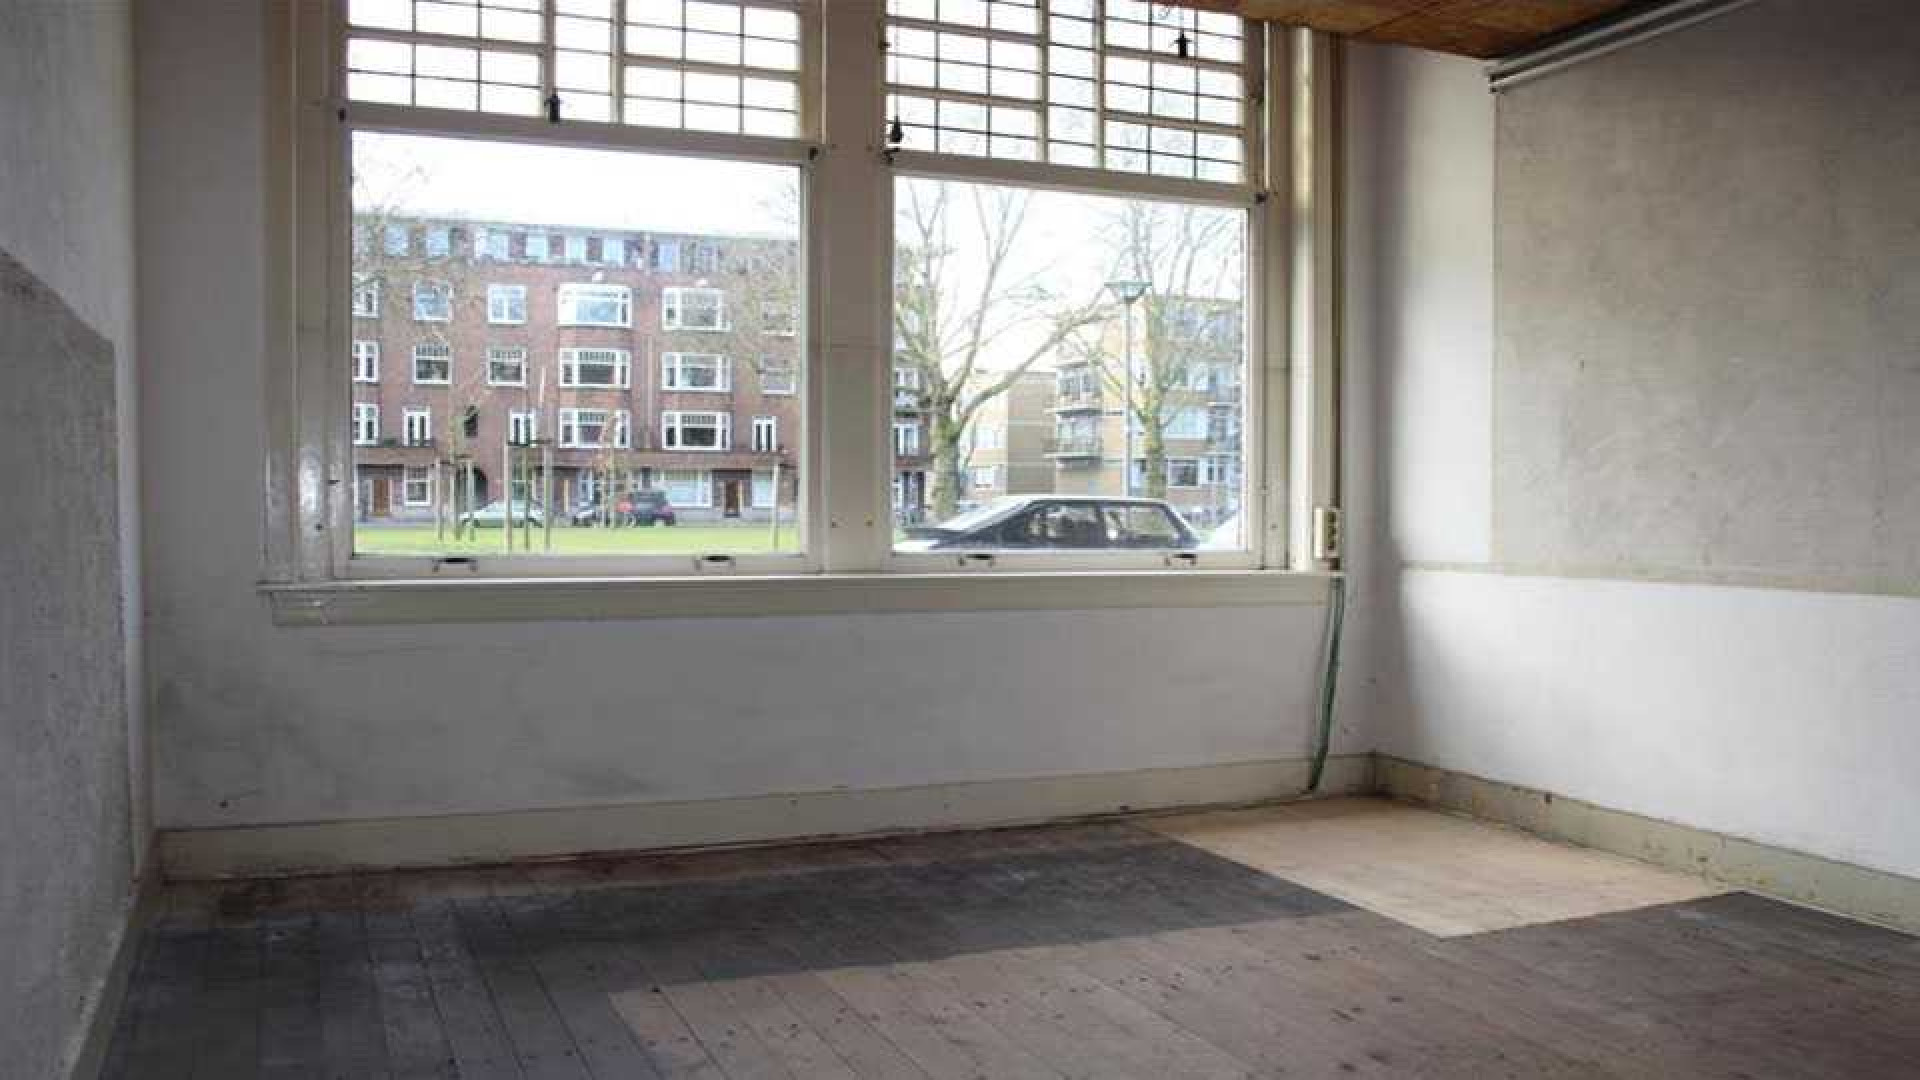 Connie Breukhoven en haar vriend Eugene kopen appartement in Rotterdam. Zie foto's 12